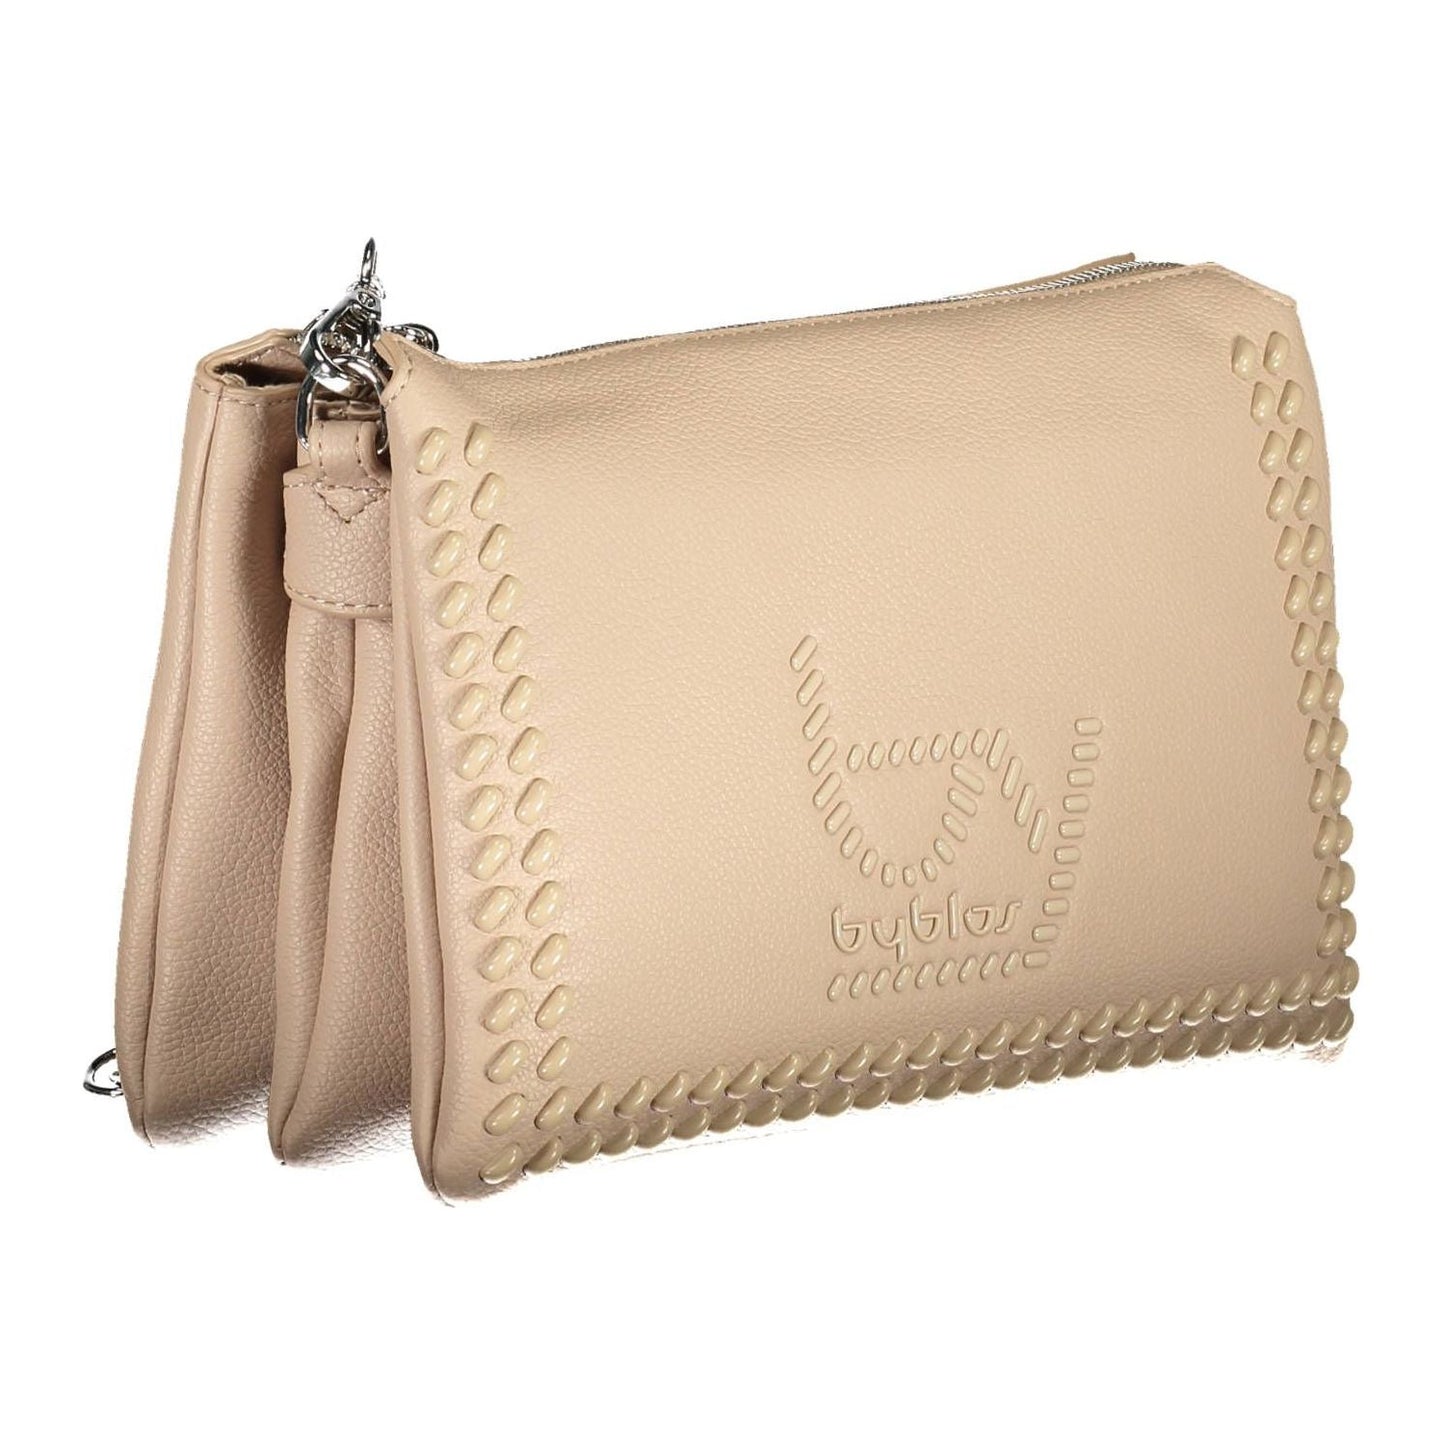 BYBLOS Chic Beige Chain-Handle Shoulder Bag chic-beige-chain-handle-shoulder-bag